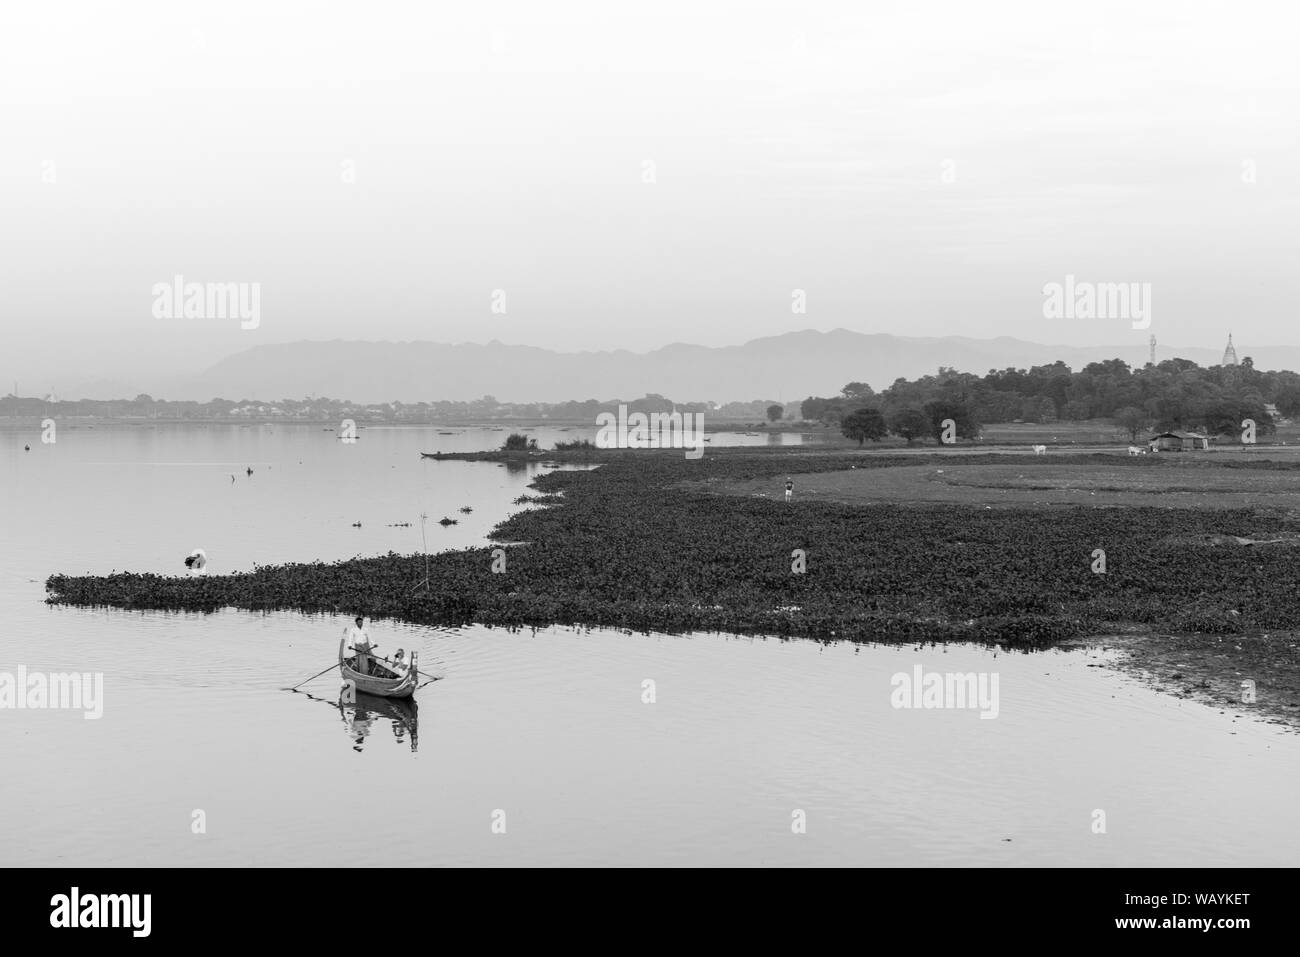 MANDALAY, MYANMAR - 03 décembre, 2018 : Noir et blanc photo de soleil colorés vue depuis le pont U Bein avec bateaux locaux à Mandalay, Myanmar Banque D'Images